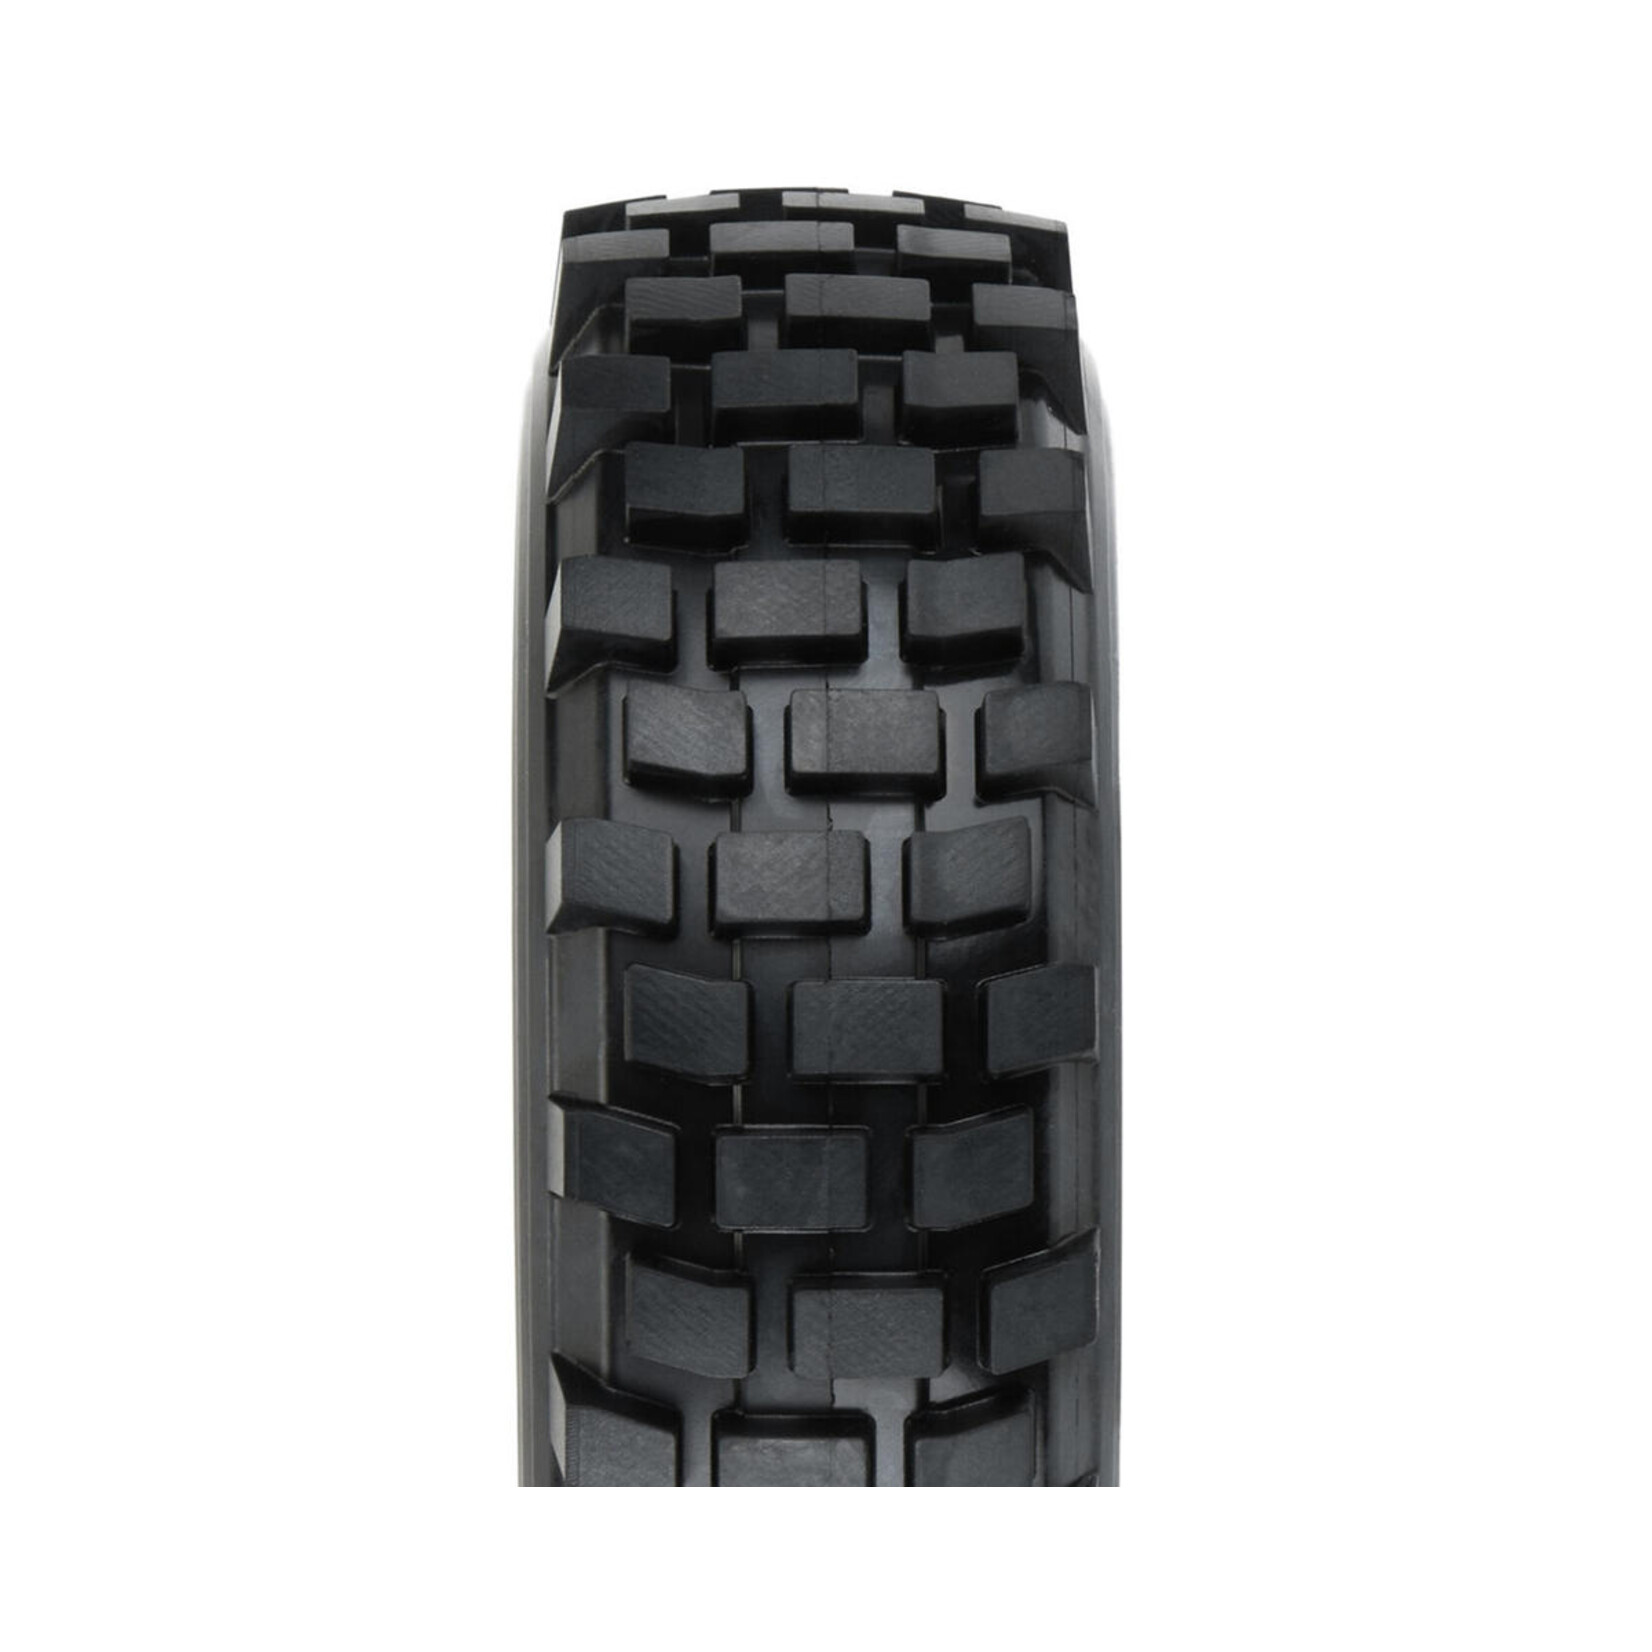 Pro-Line Pro-Line Grunt Rock Terrain 1.9" Rock Crawler Tires (2) (G8) w/Memory Foam #10172-14